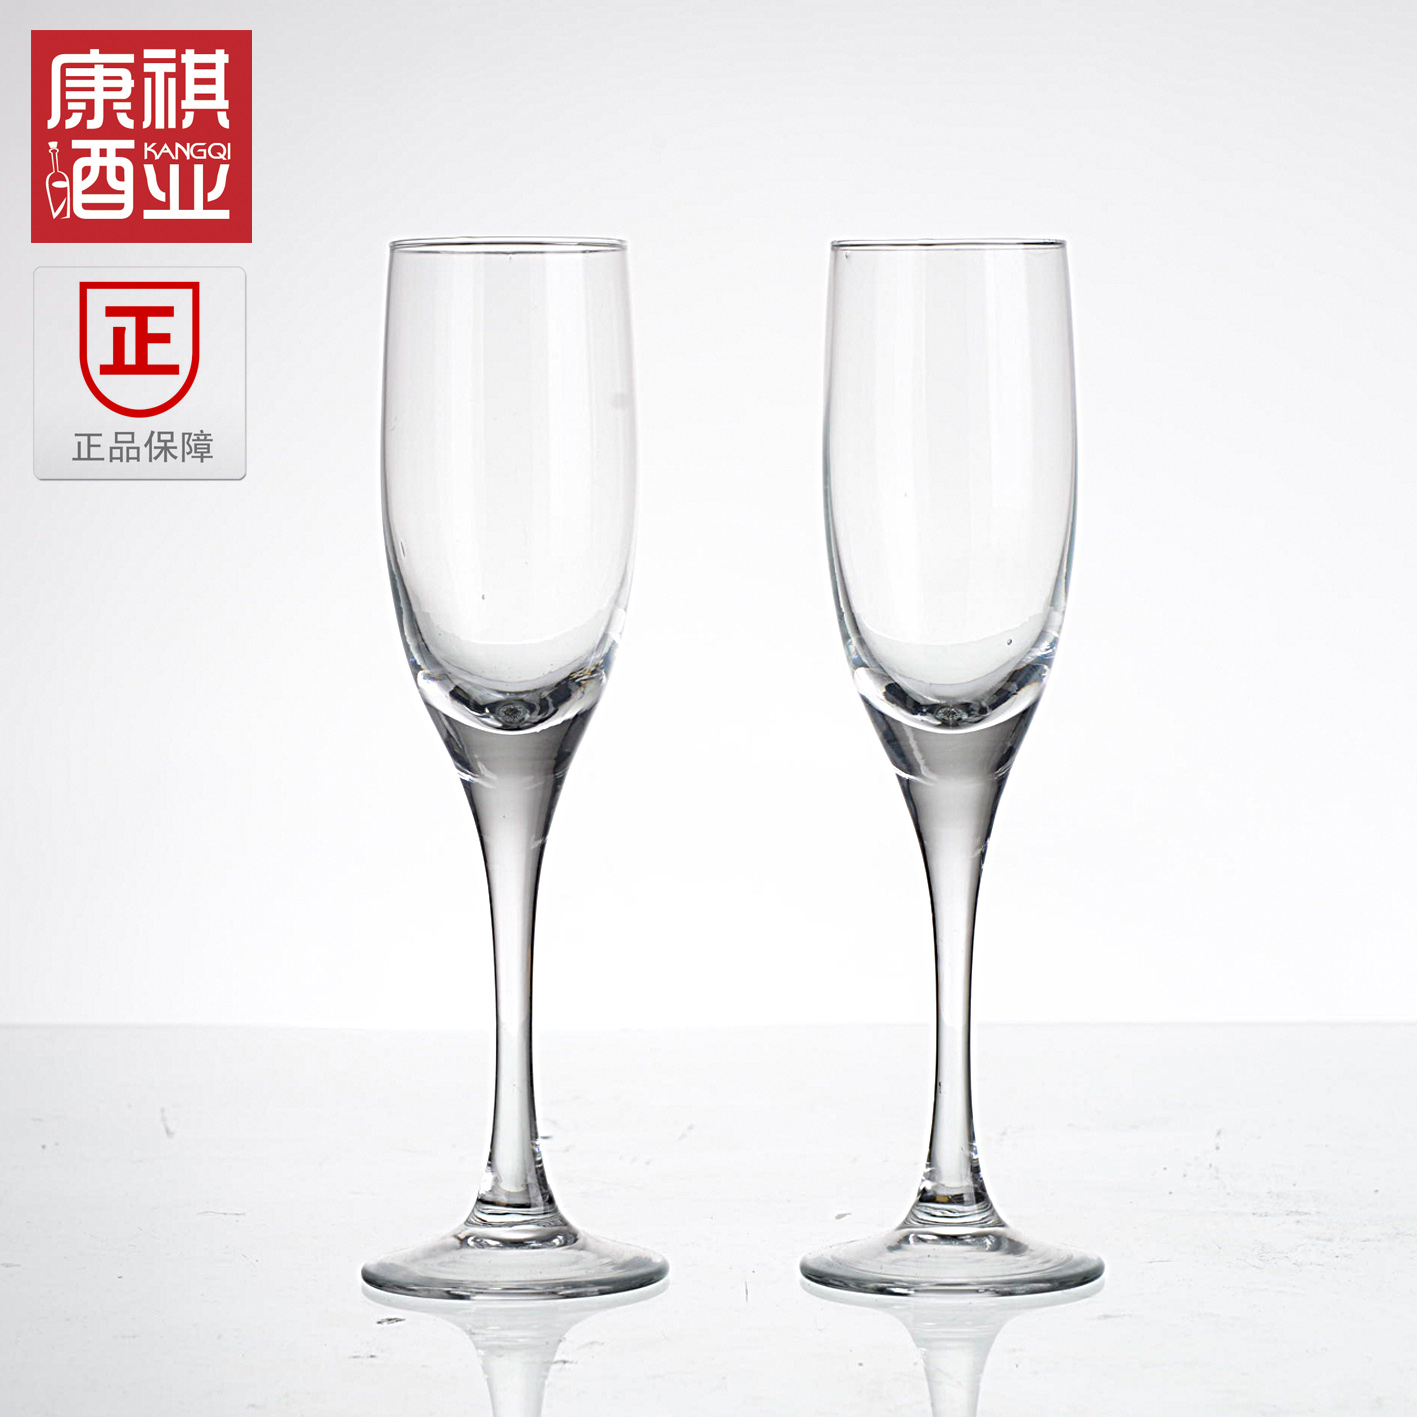 厂家直销中国驰名高档晶质玻璃杯兴宝兴水晶红葡萄酒香槟杯375ml折扣优惠信息